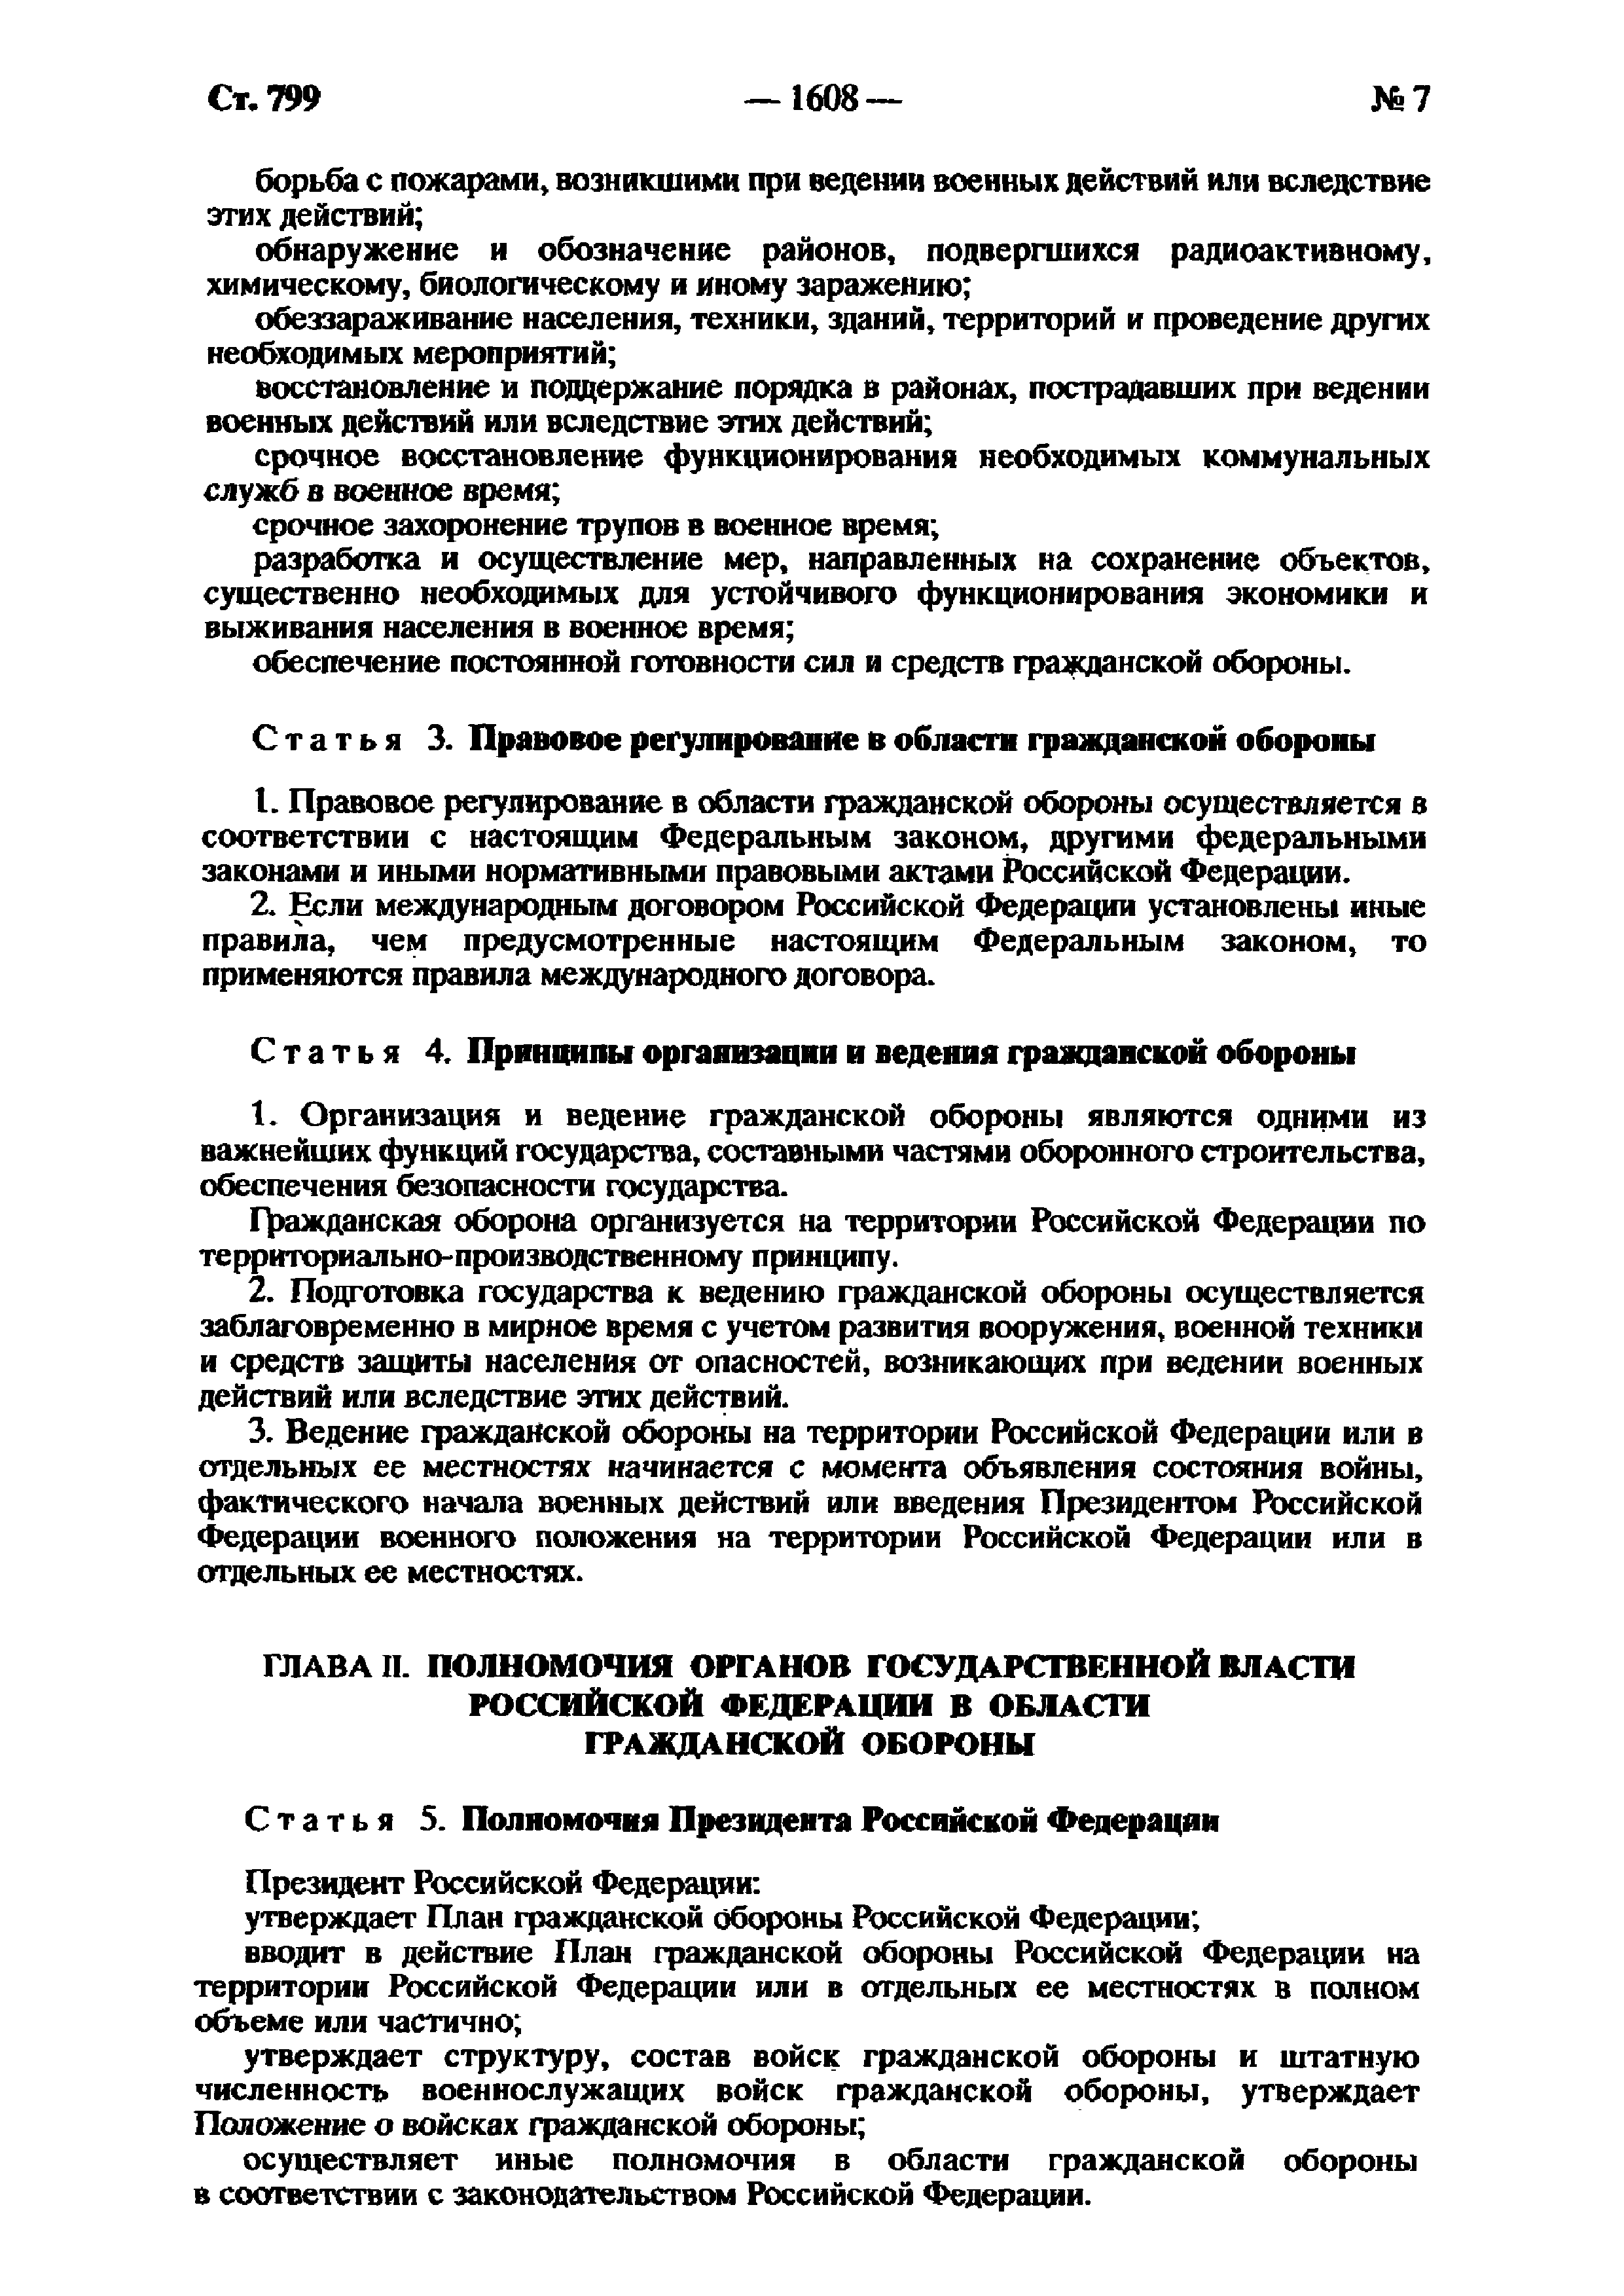 Права и обязанности граждан РФ по Федеральному закону о гражданской обороне